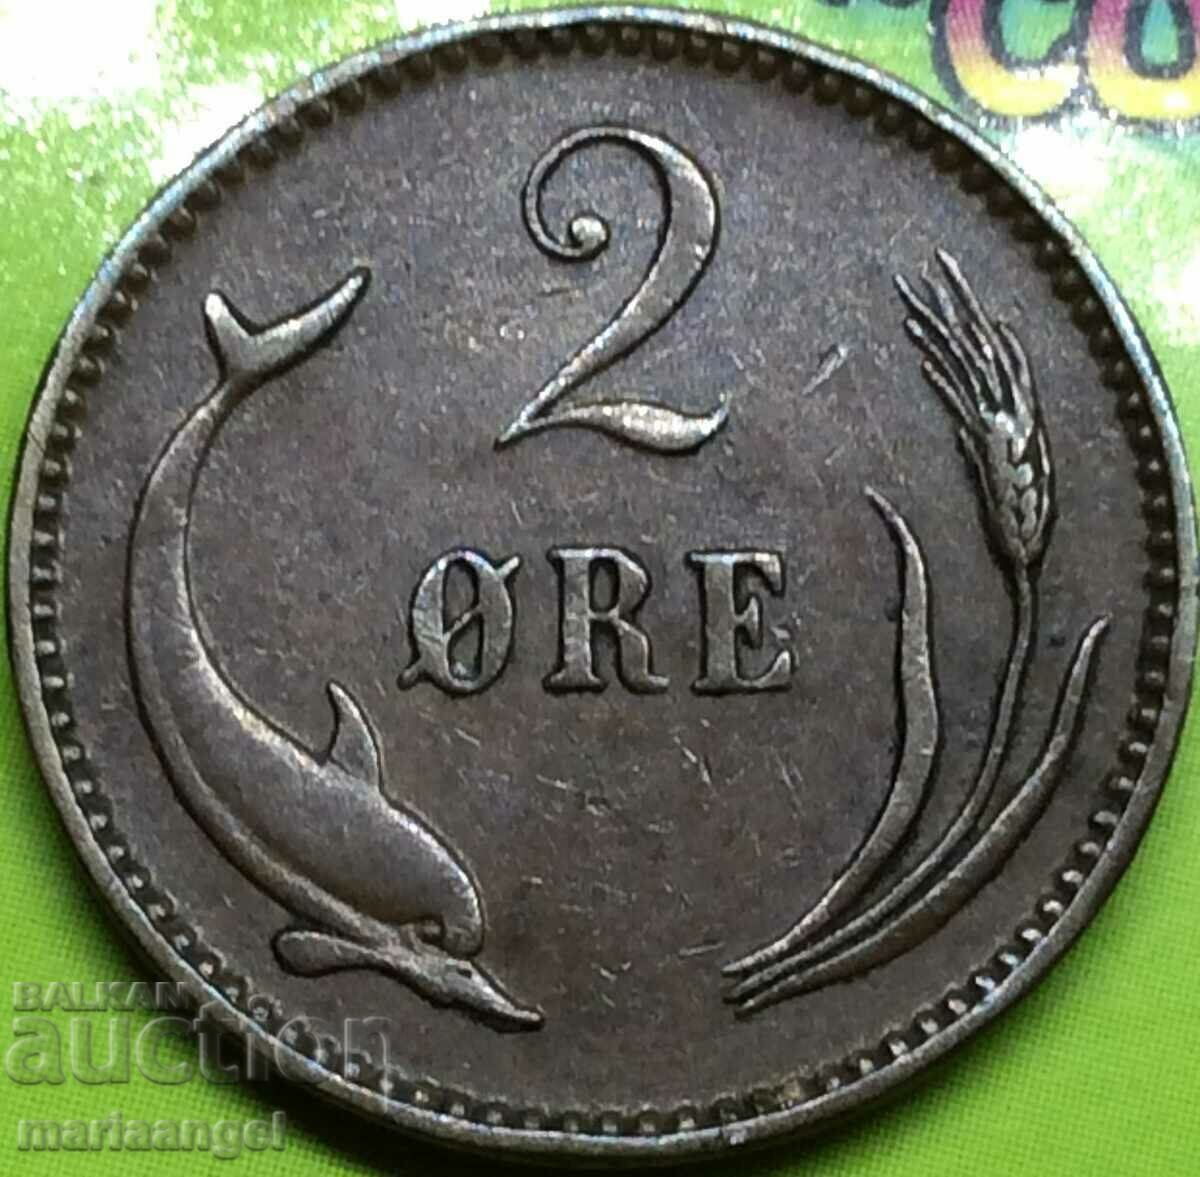 Denmark 2 ore yore 1902 - rare